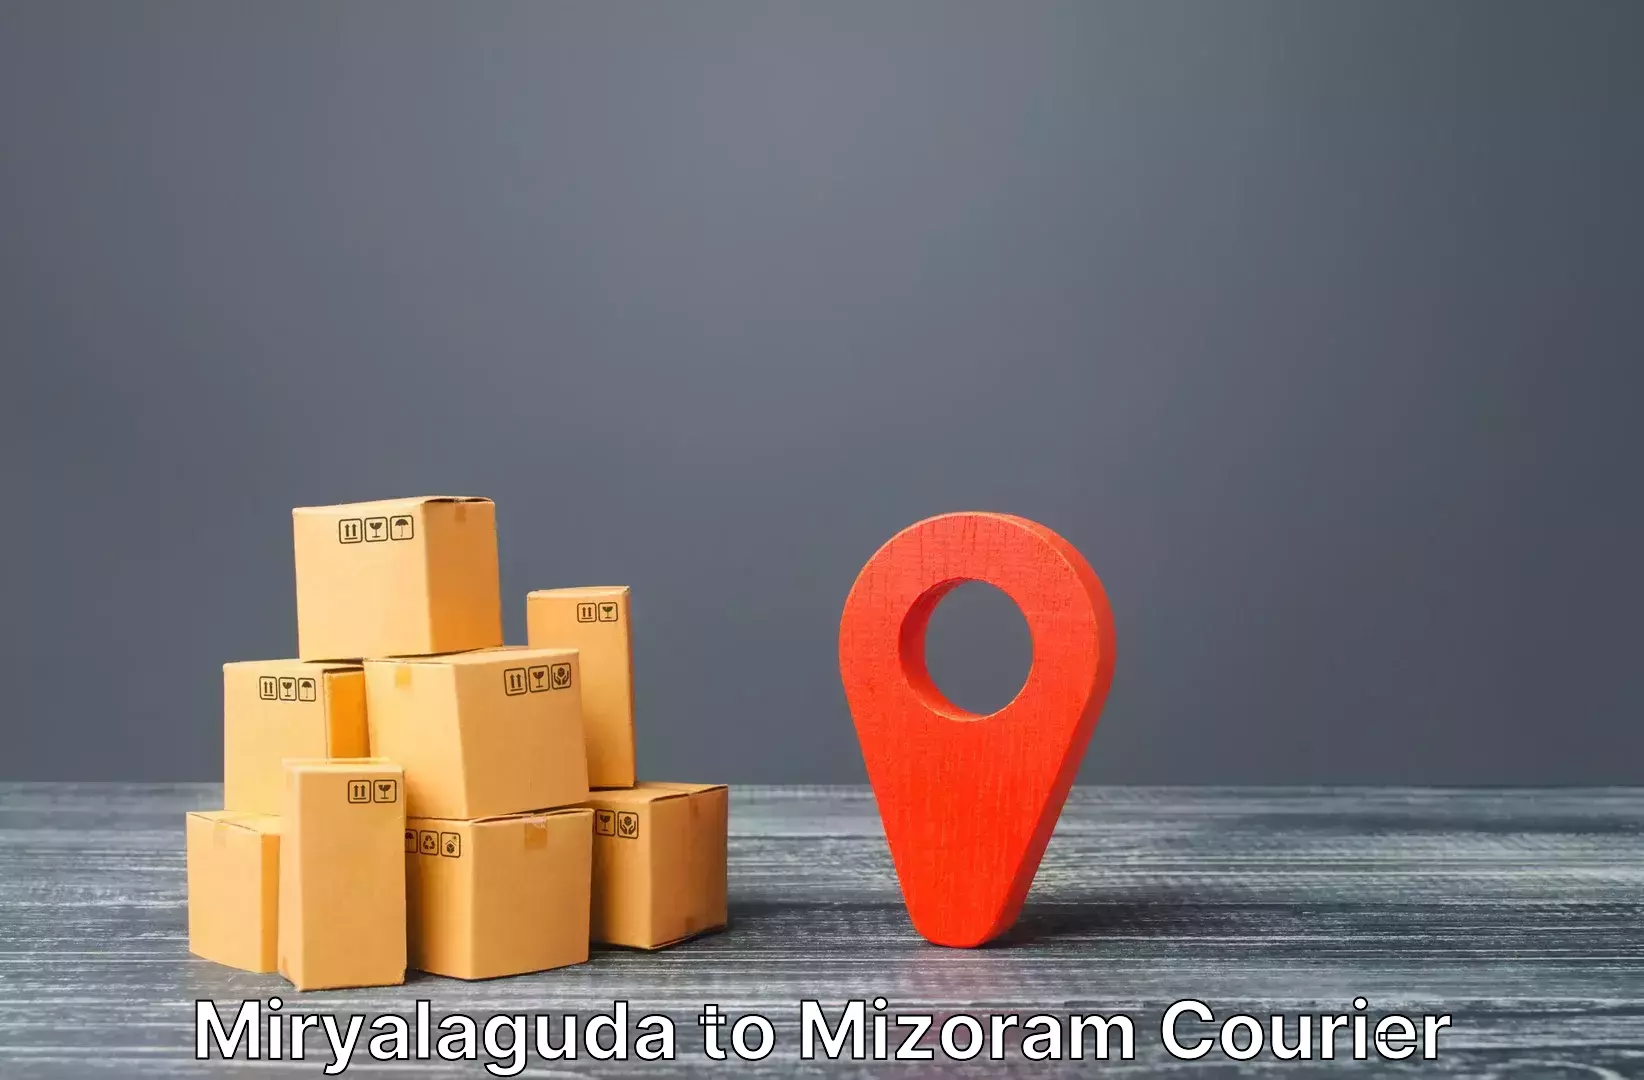 Luggage transport operations Miryalaguda to Khawzawl